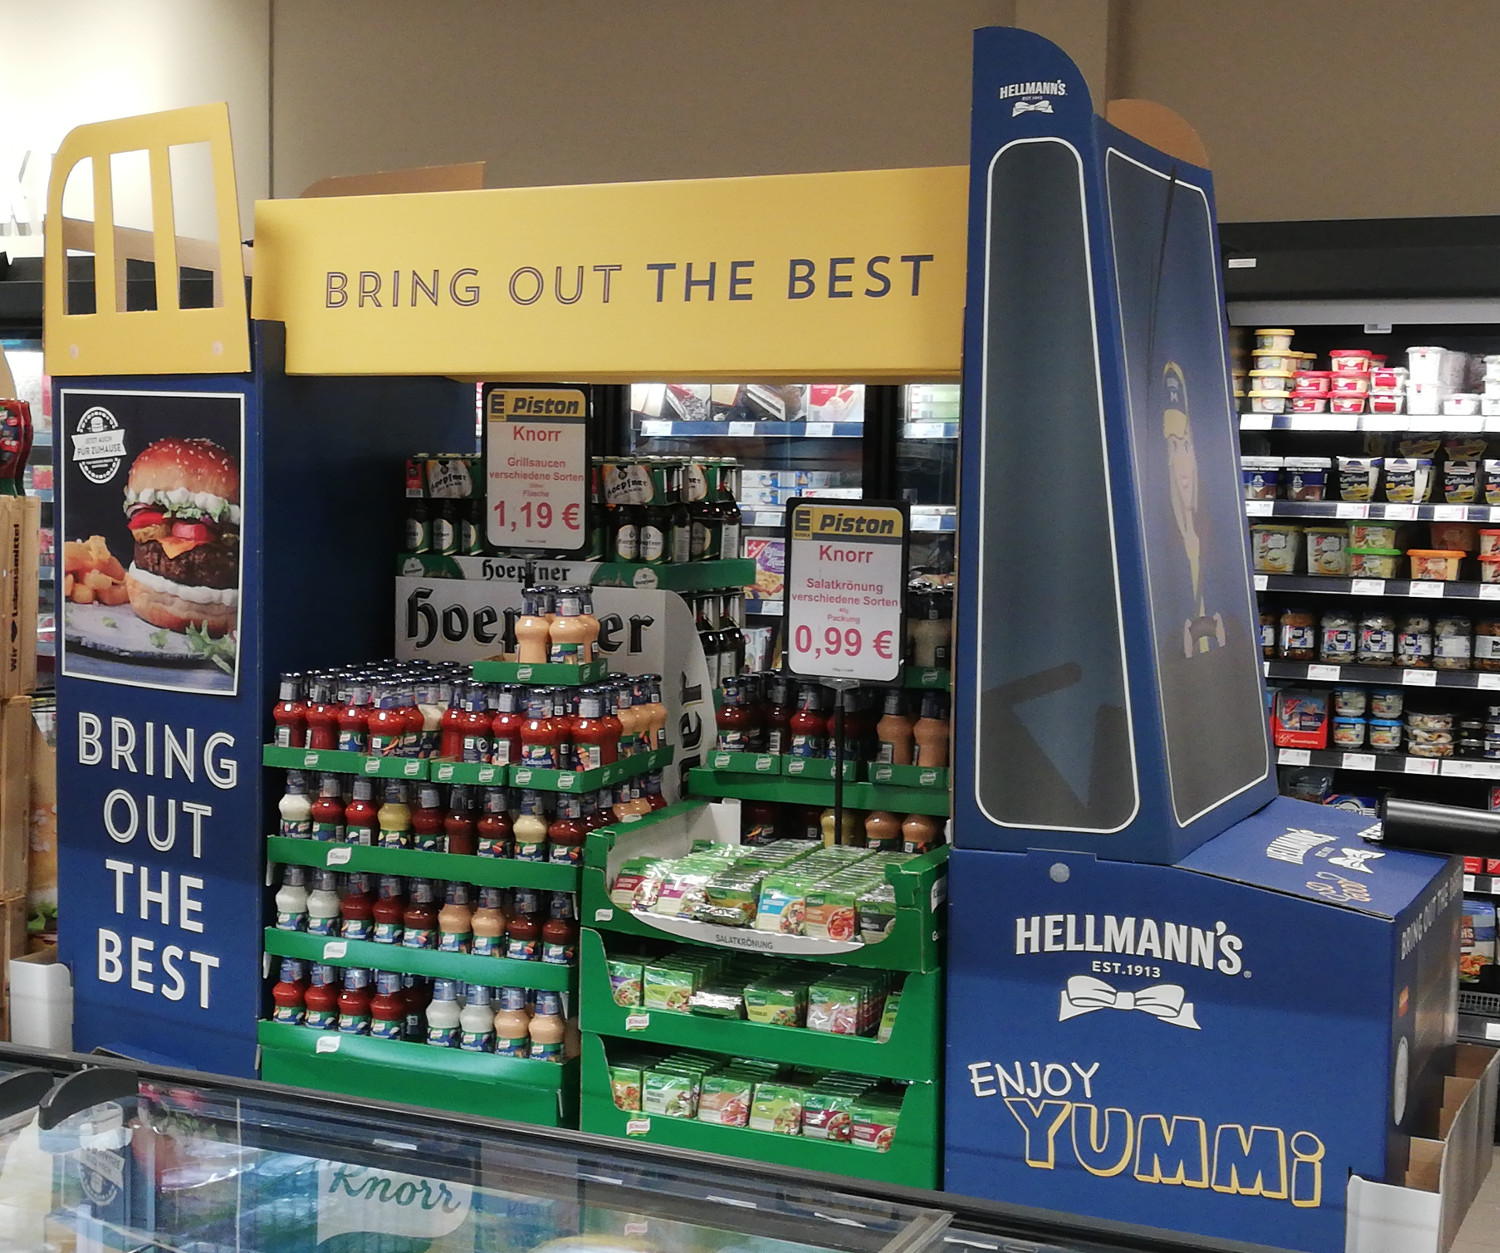 Diese In-Store Promotion von Hellmann's ist komplett mit Konkurrenzprodukten gefüllt.